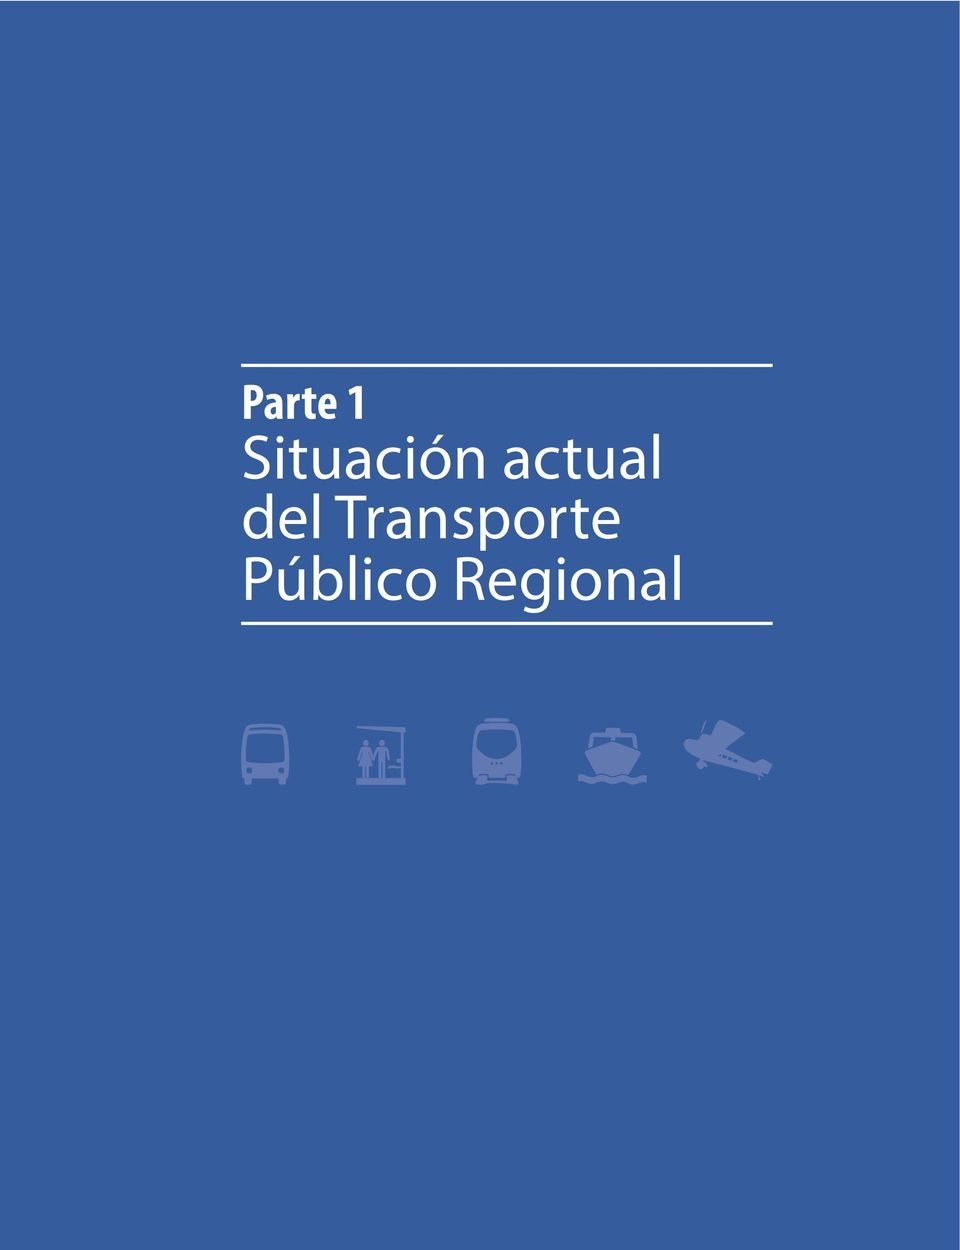 Público Regional